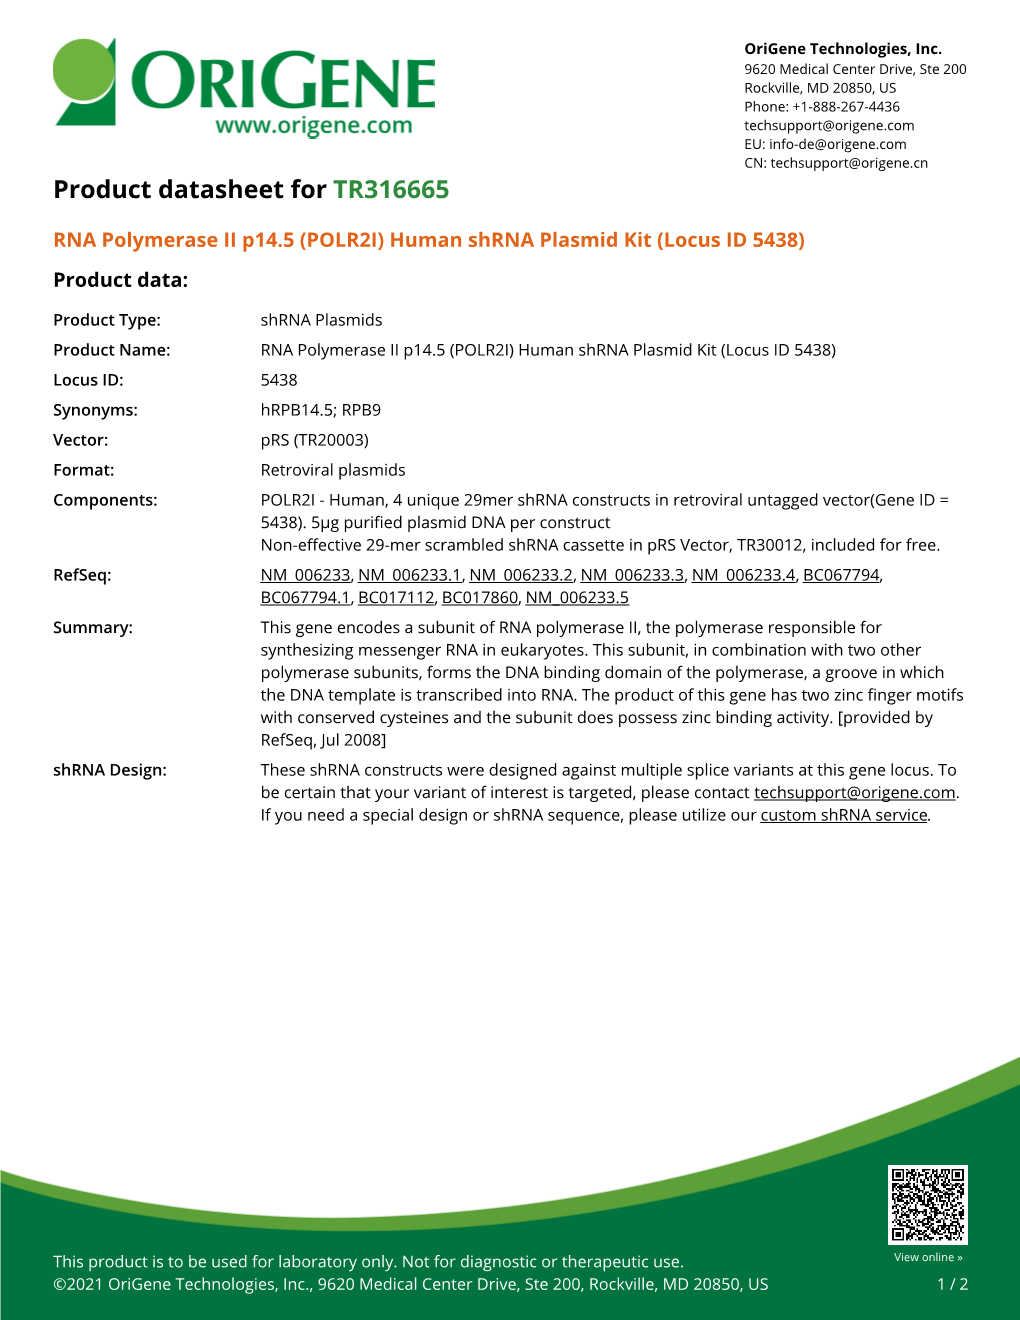 POLR2I Human Shrna Plasmid Kit (Locus ID 5438